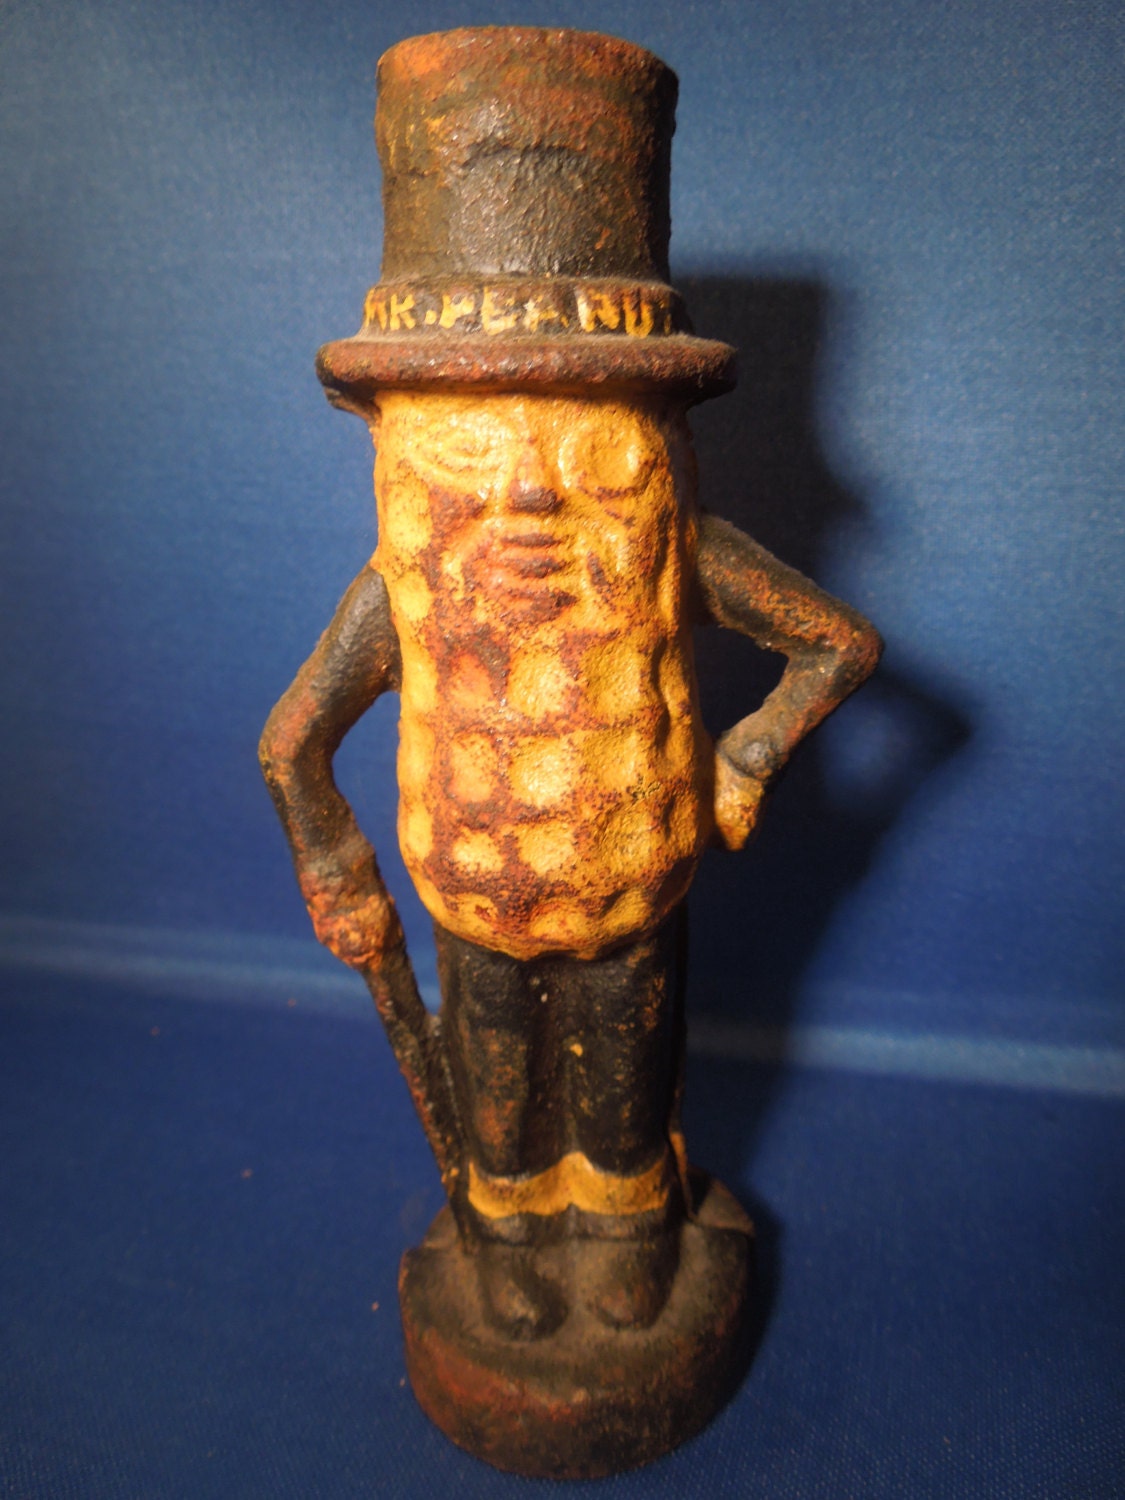 Vintage Mr. Peanut Cast Iron Bank by OpheliasVintageAttic on Etsy